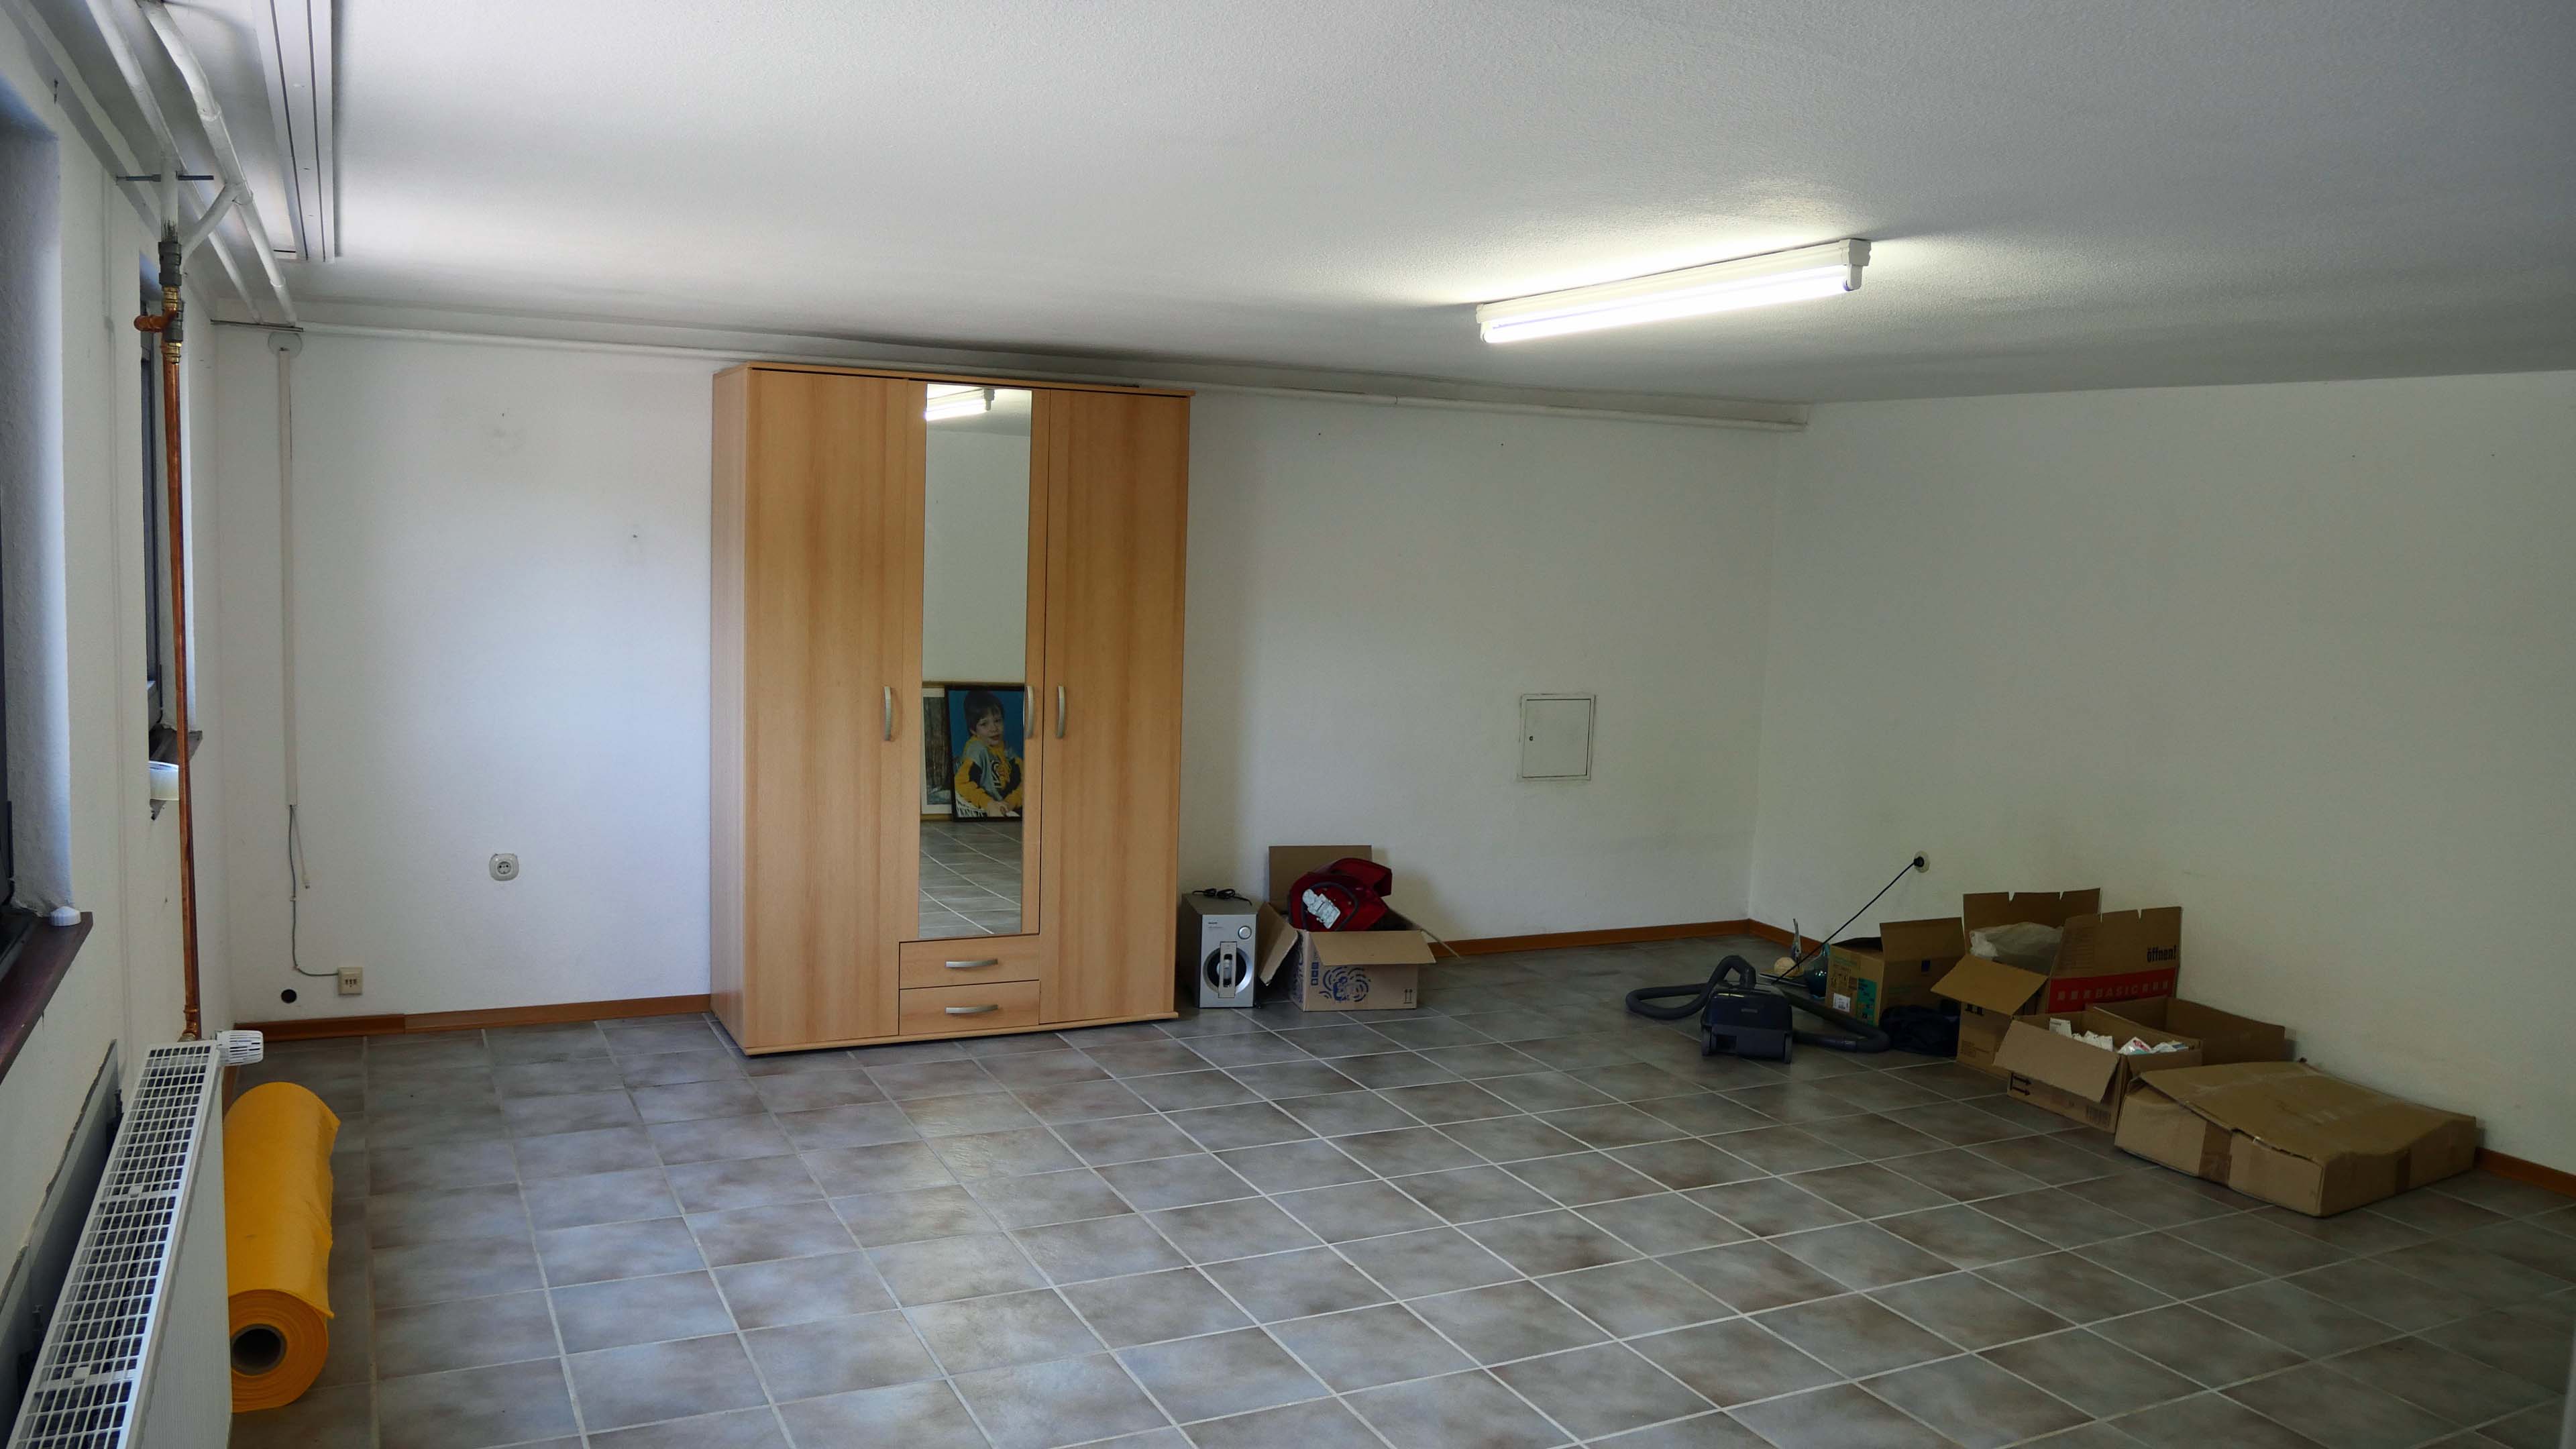 Nümbrecht-Prombach: Ganz ruhig und versteckt gelegen. Bungalow mit zwei Garagen., 30 m² großes "Notzimmer" im Untergeschoss